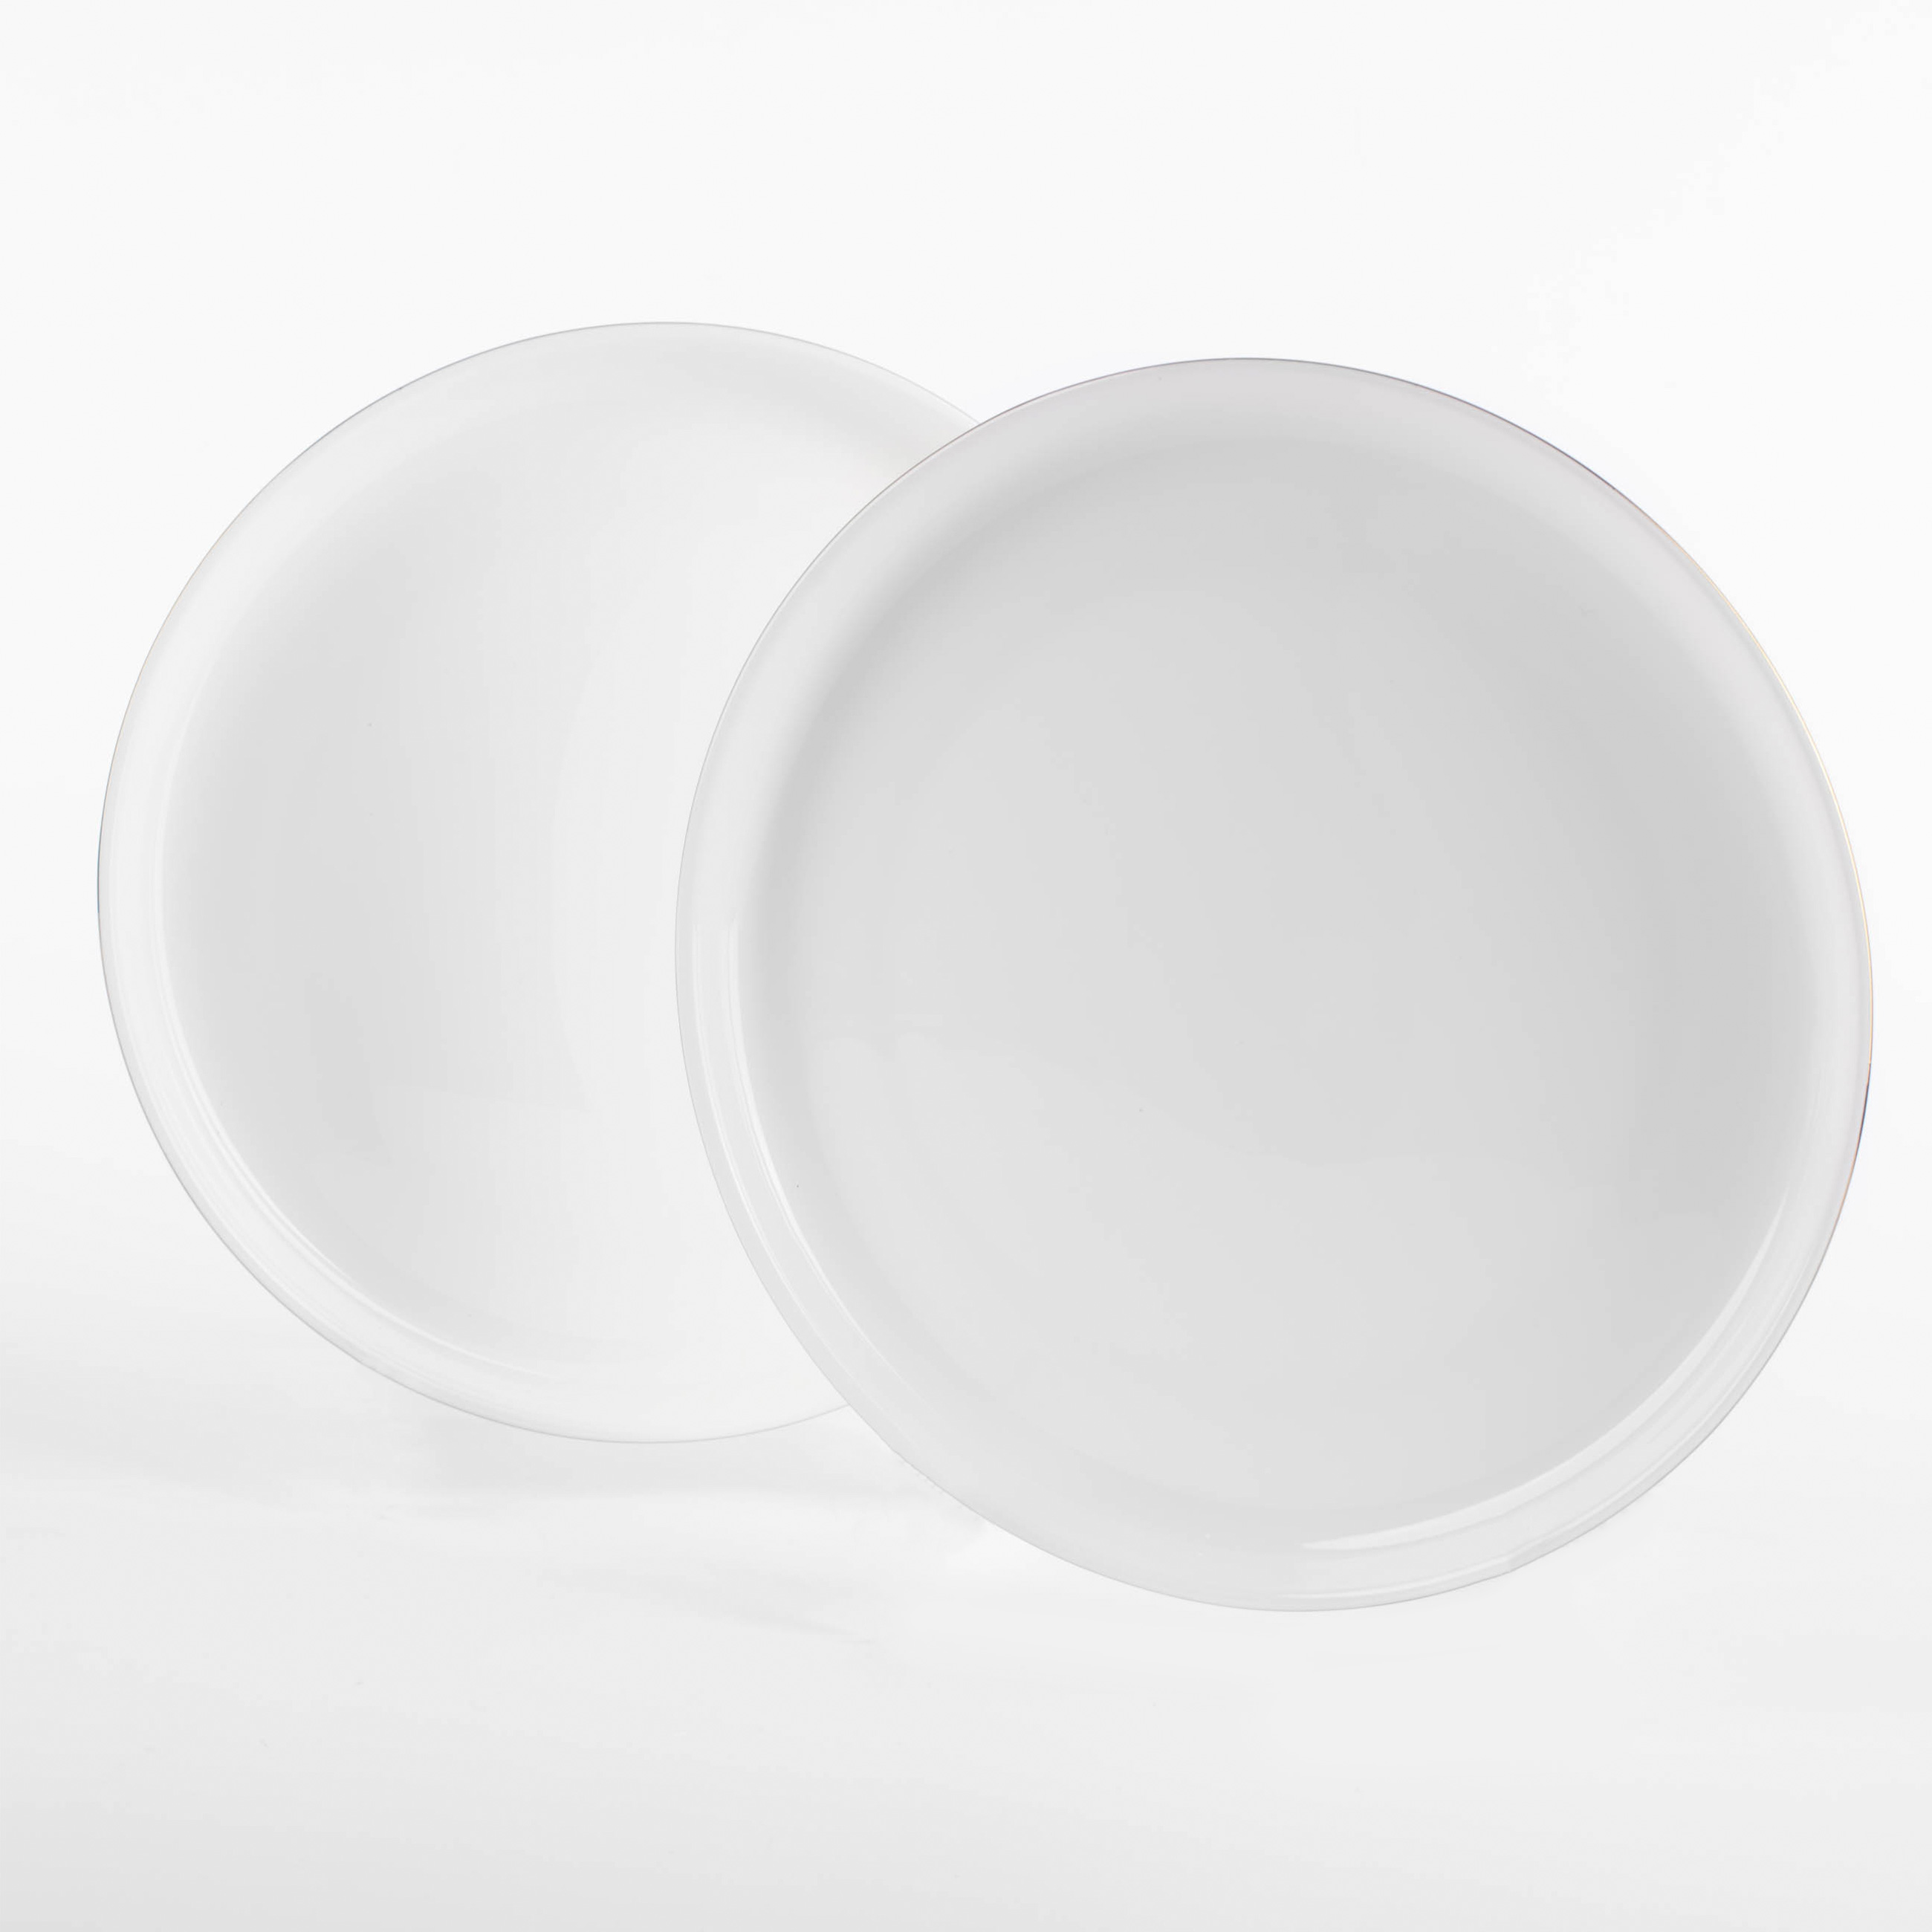 Dessert plate, 20 cm, 2 pieces, porcelain F, white, Ideal gold изображение № 5